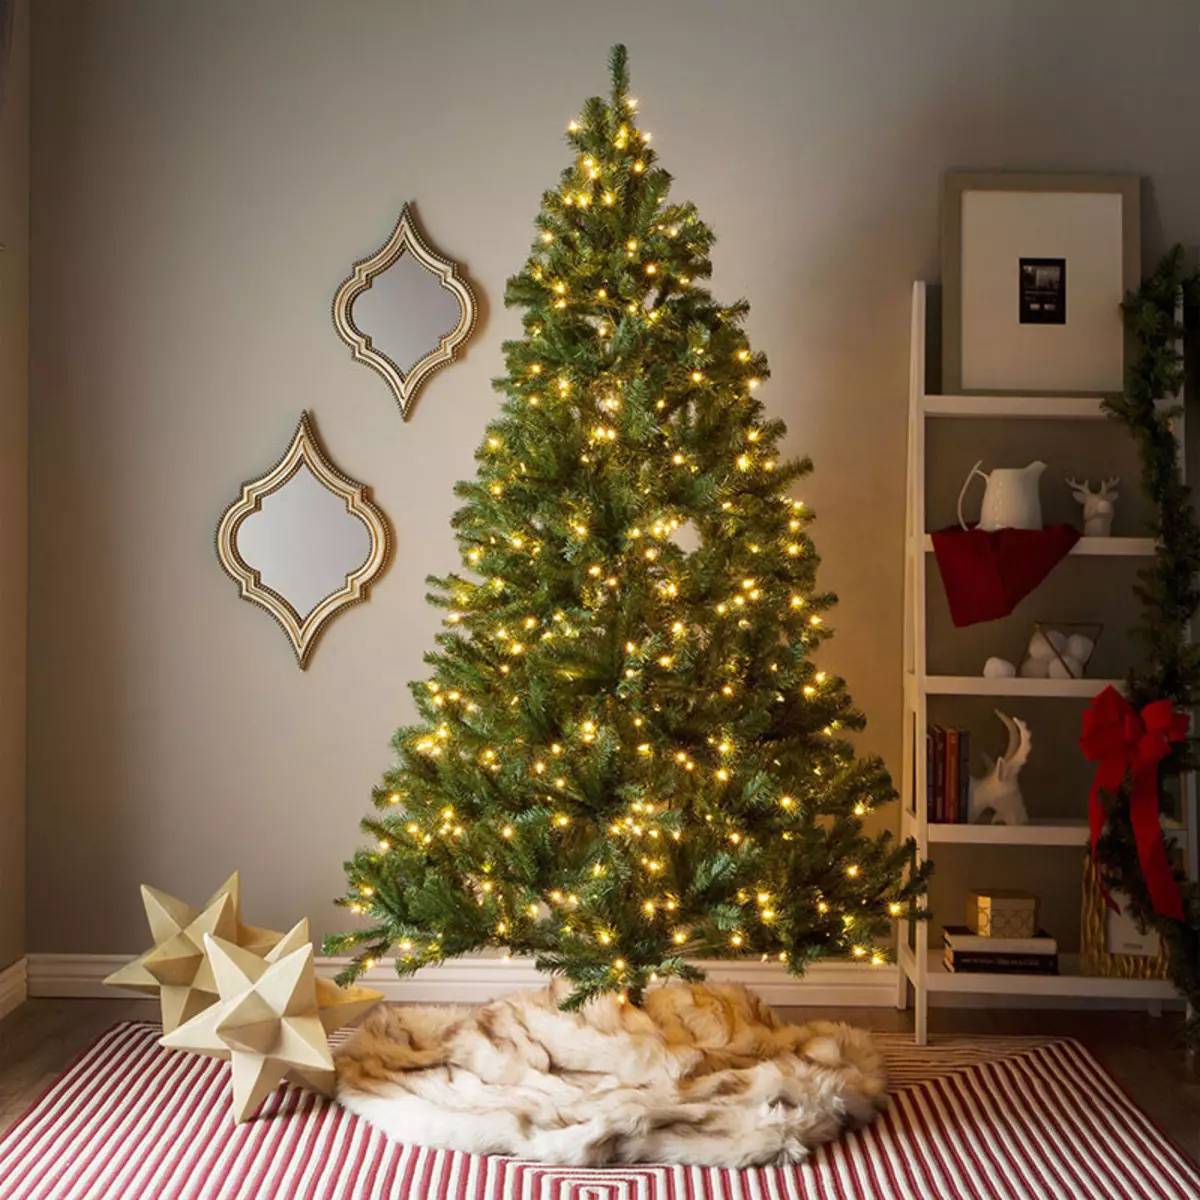 Ako zdobí vianočný strom s vencom? Ako správne a krásne obliekať to podľa schémy s žiariace elektrickej girlandami a ďalšie veniec? 7630_2